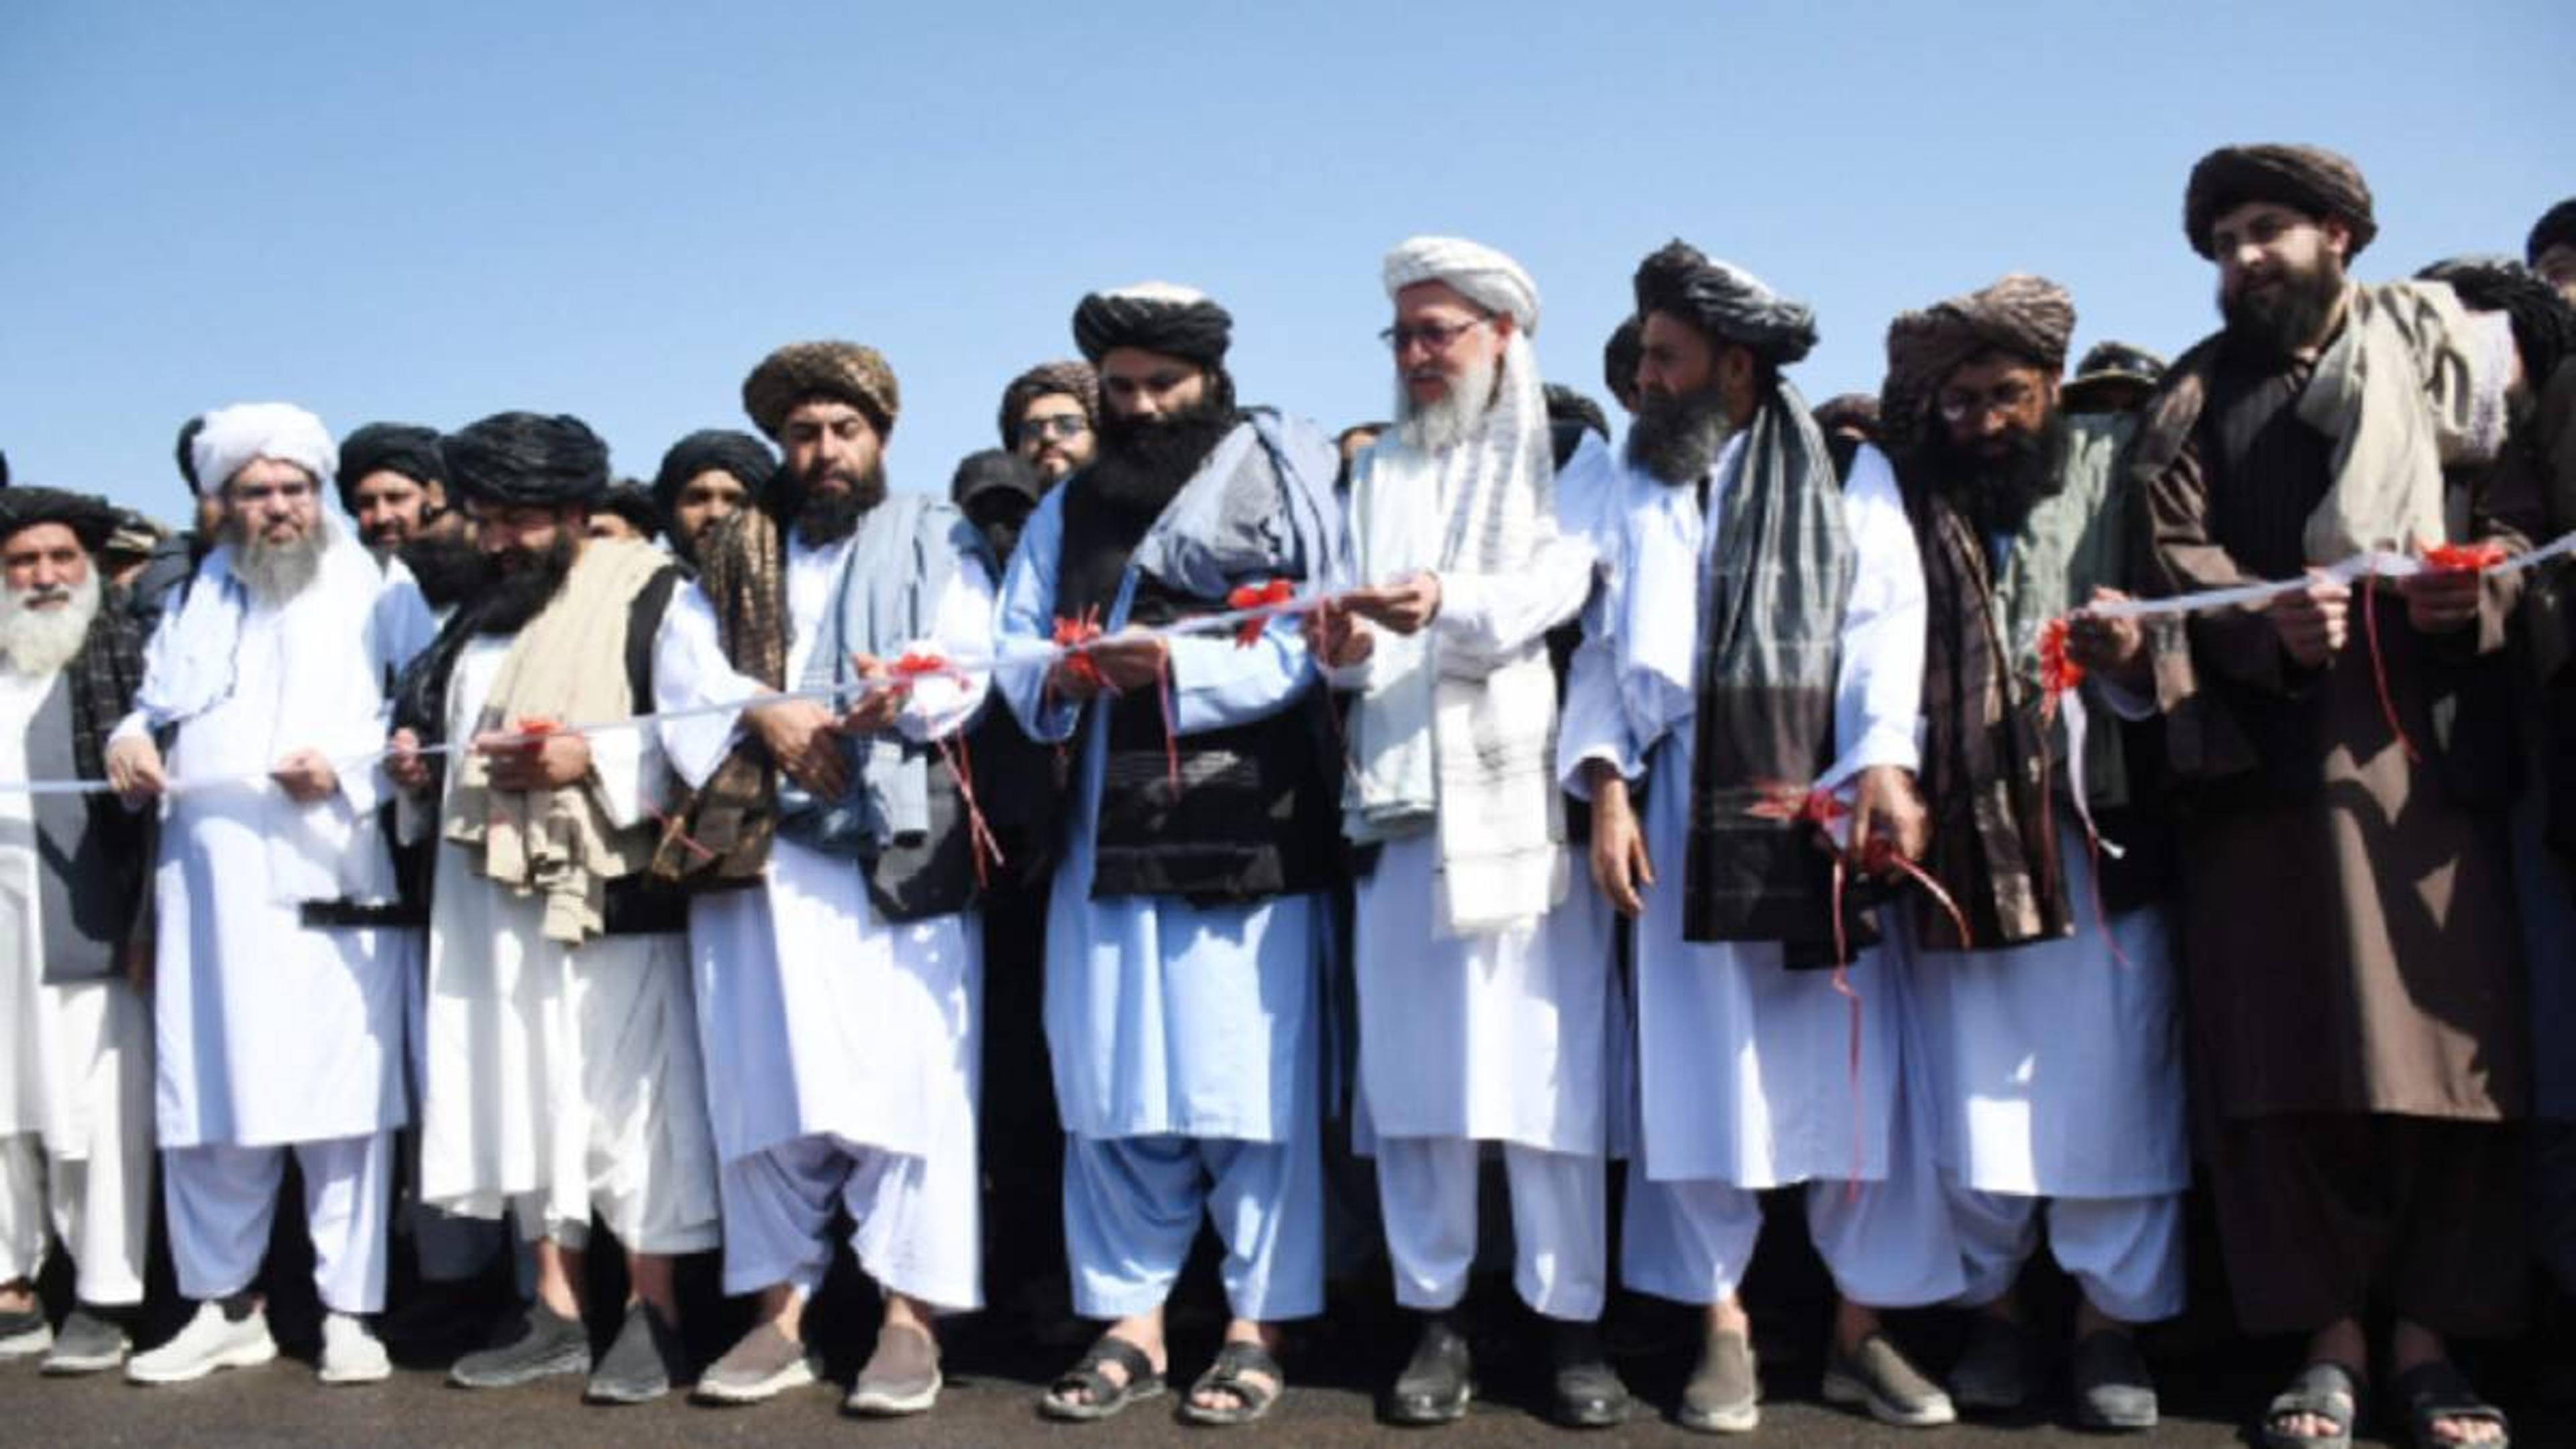 Afghansitan: थम नहीं रहा तालिबान का कहर, फुटबॉल स्टेडियम में दो लोगों को सरेआम गोलियों से भूना